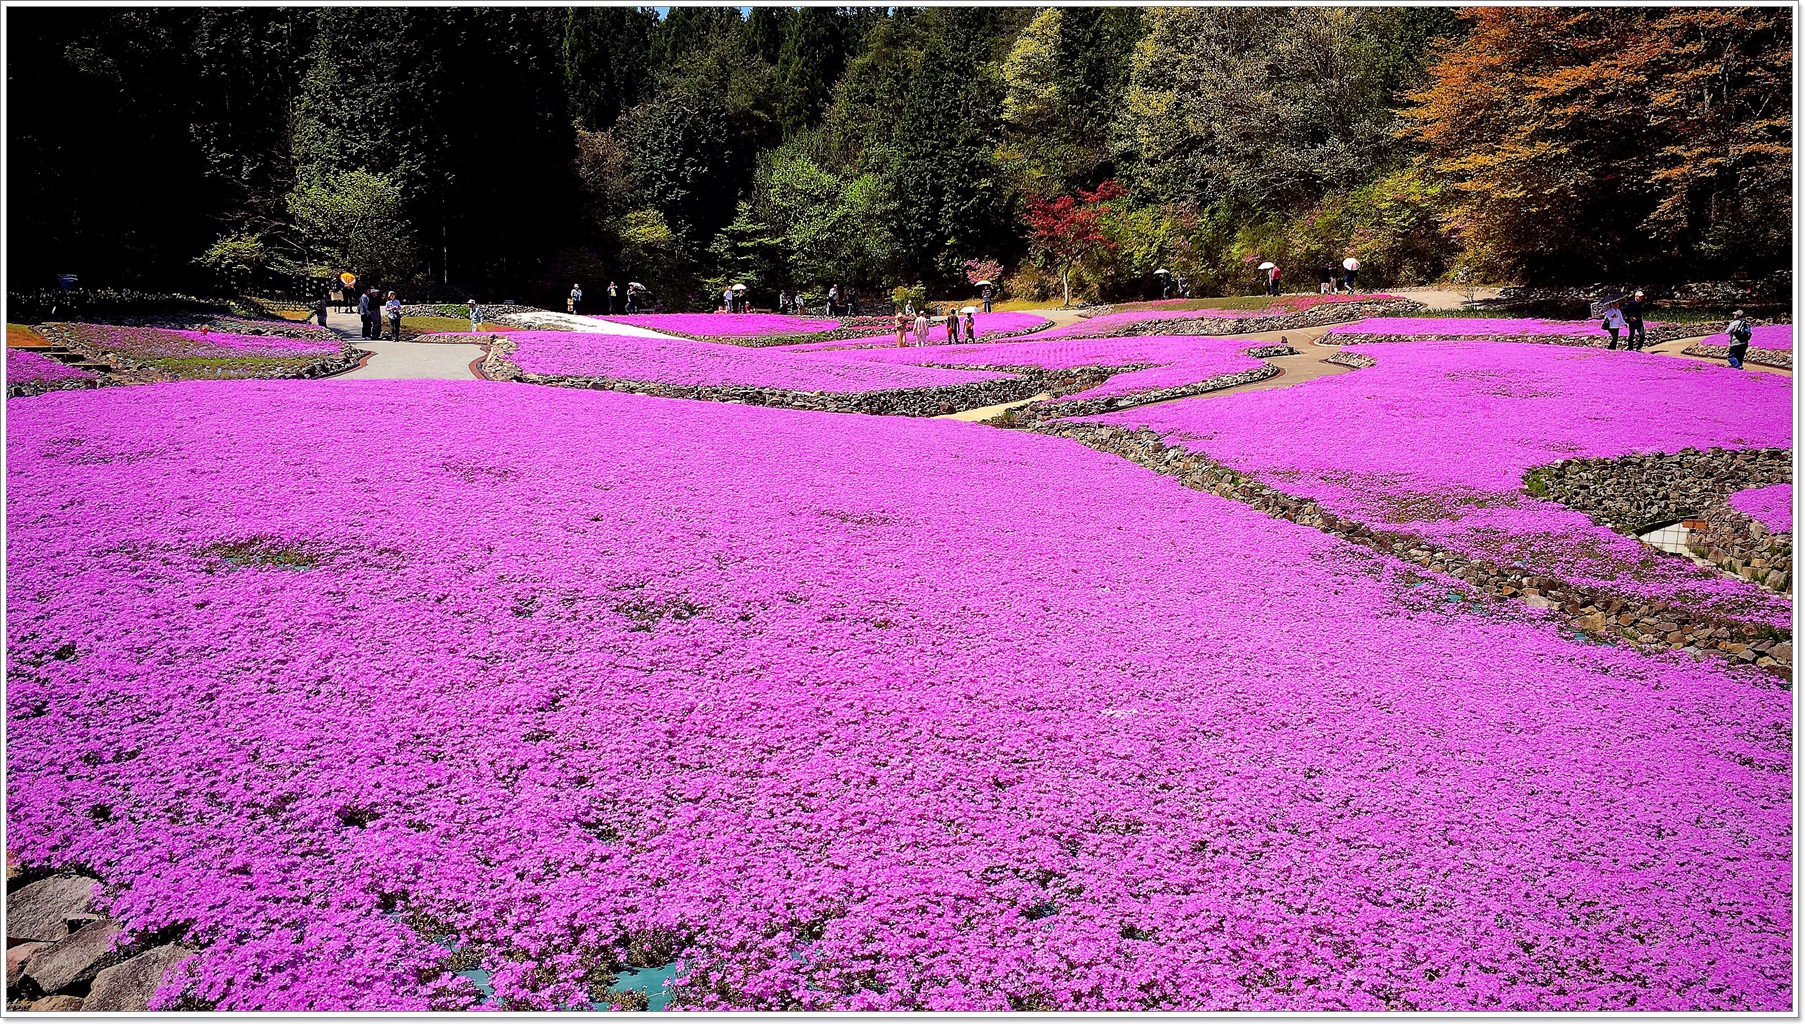 兵庫の庭園 芝桜専門の庭園 花のじゅうたんの見どころと行き方 Japan S Travel Manual